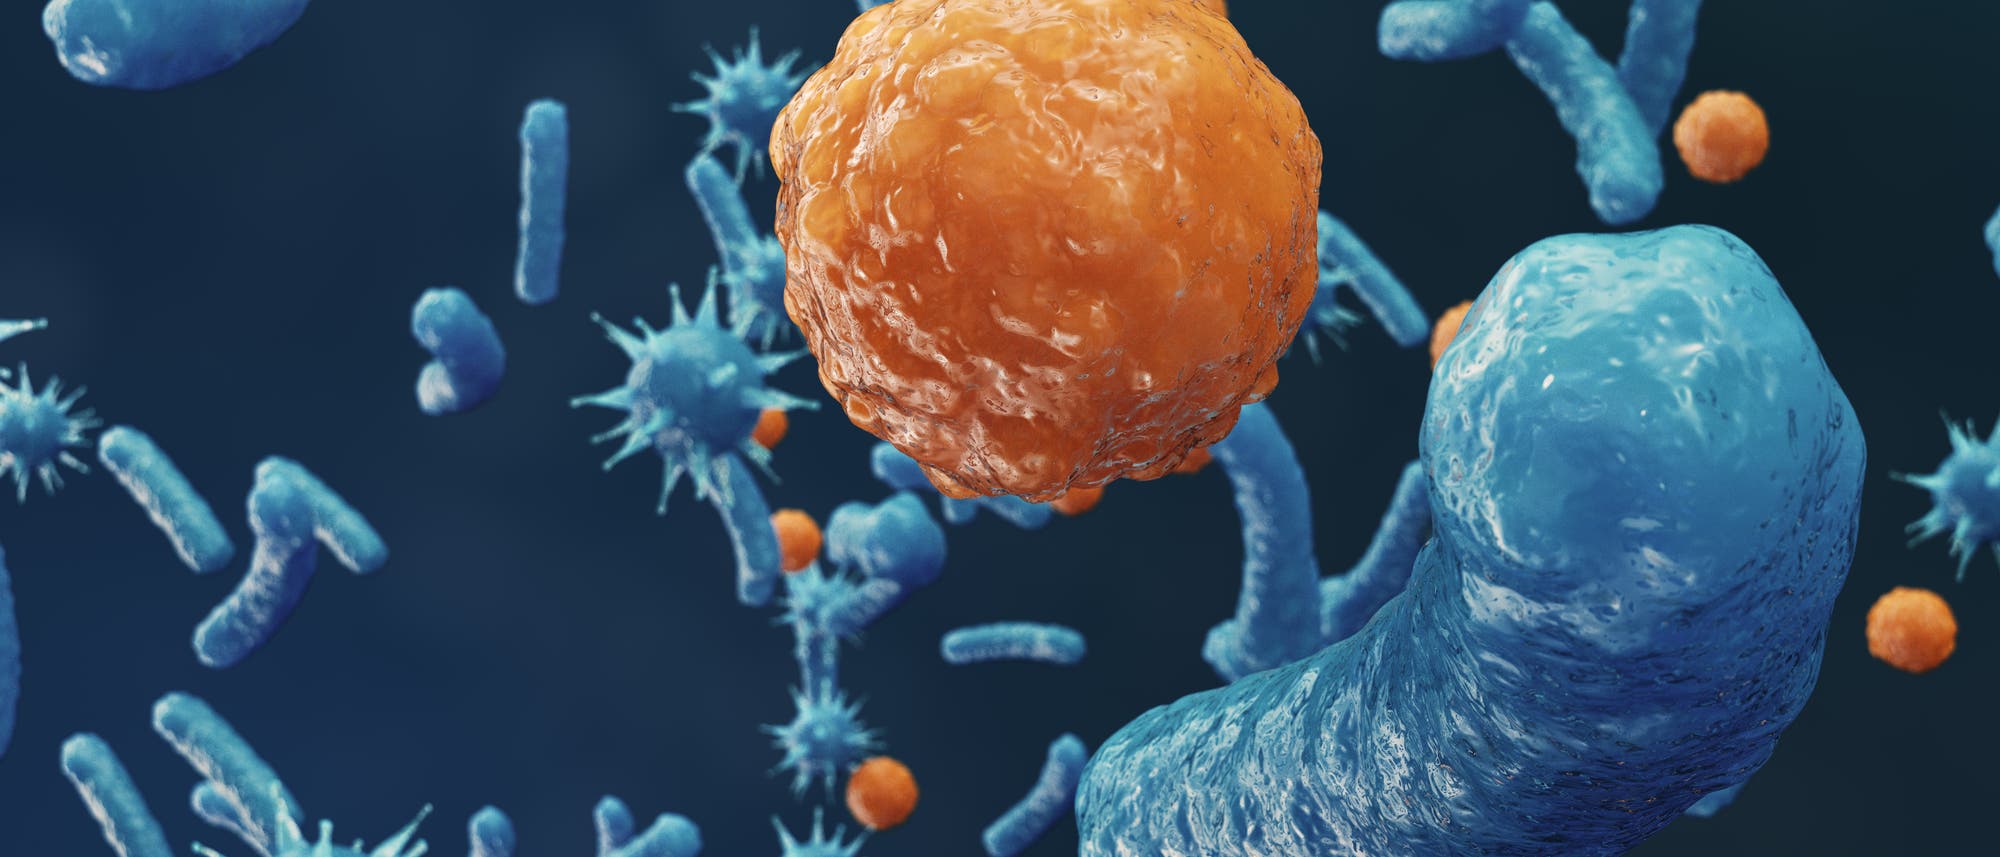 Abstrakte Darstellung von so etwas wie Viren und Bakterien auf blauem Hintergrund.